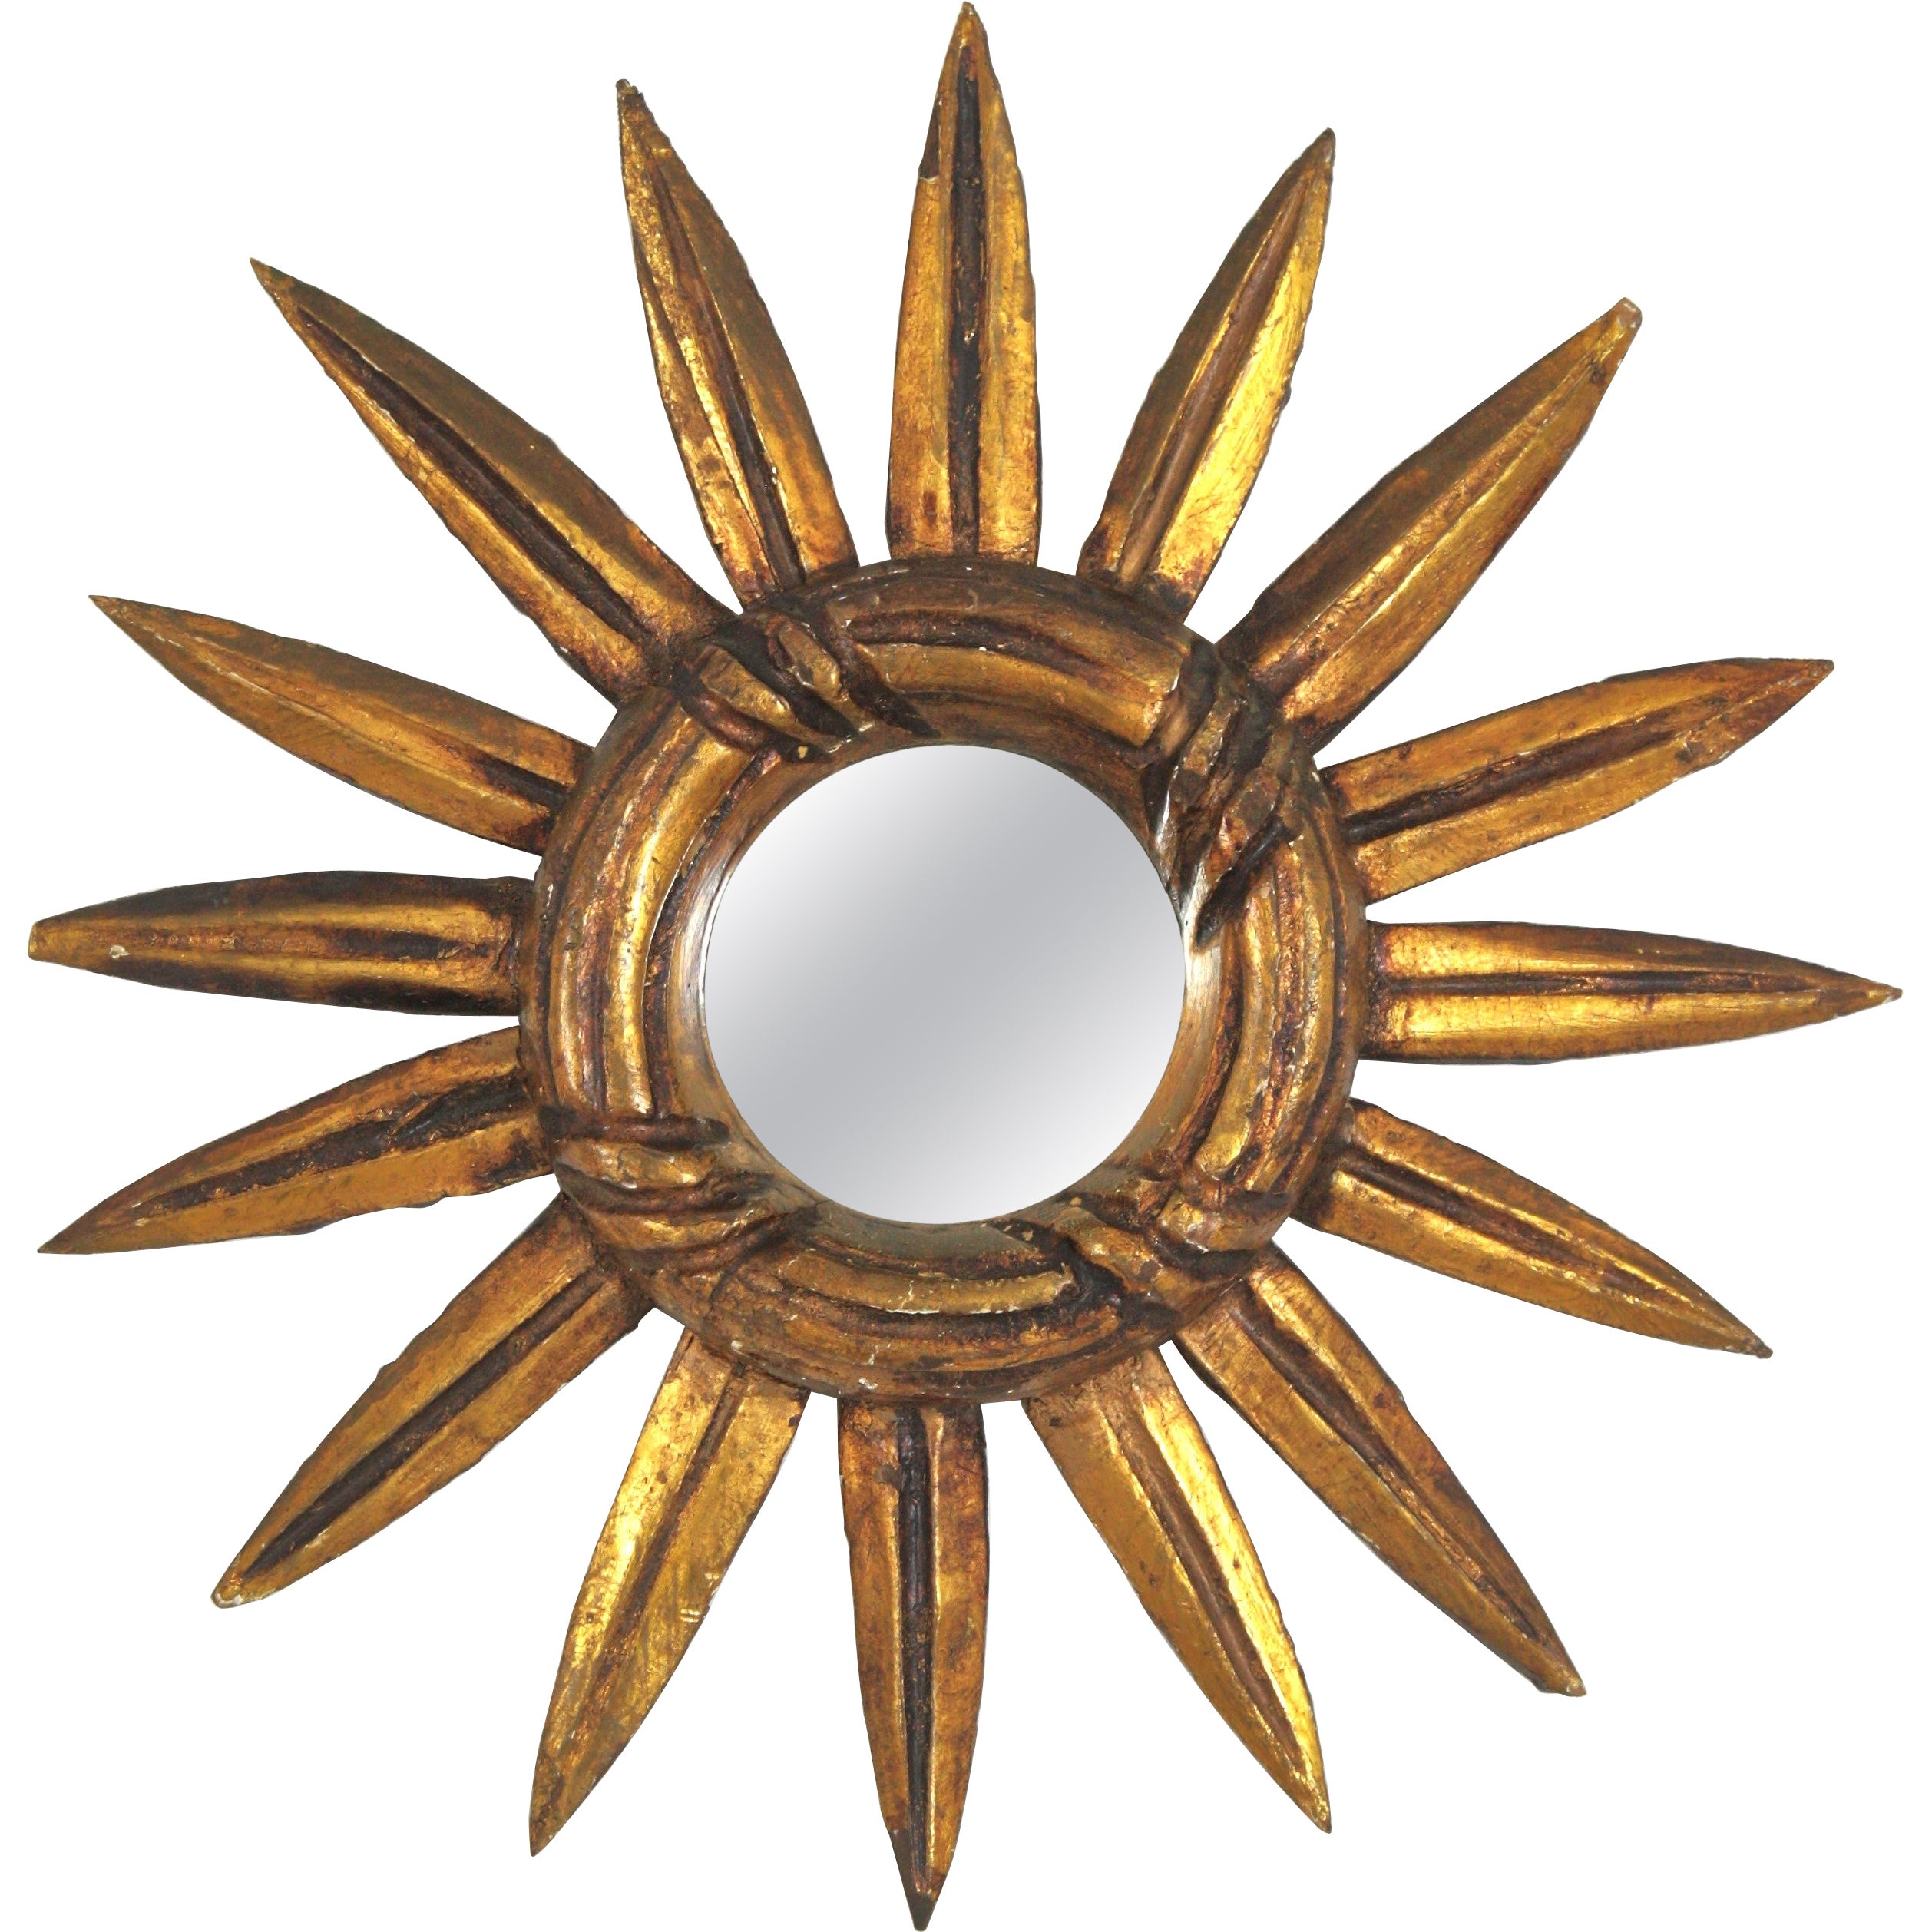 Miroir espagnol Sunburst de petite taille en bois doré